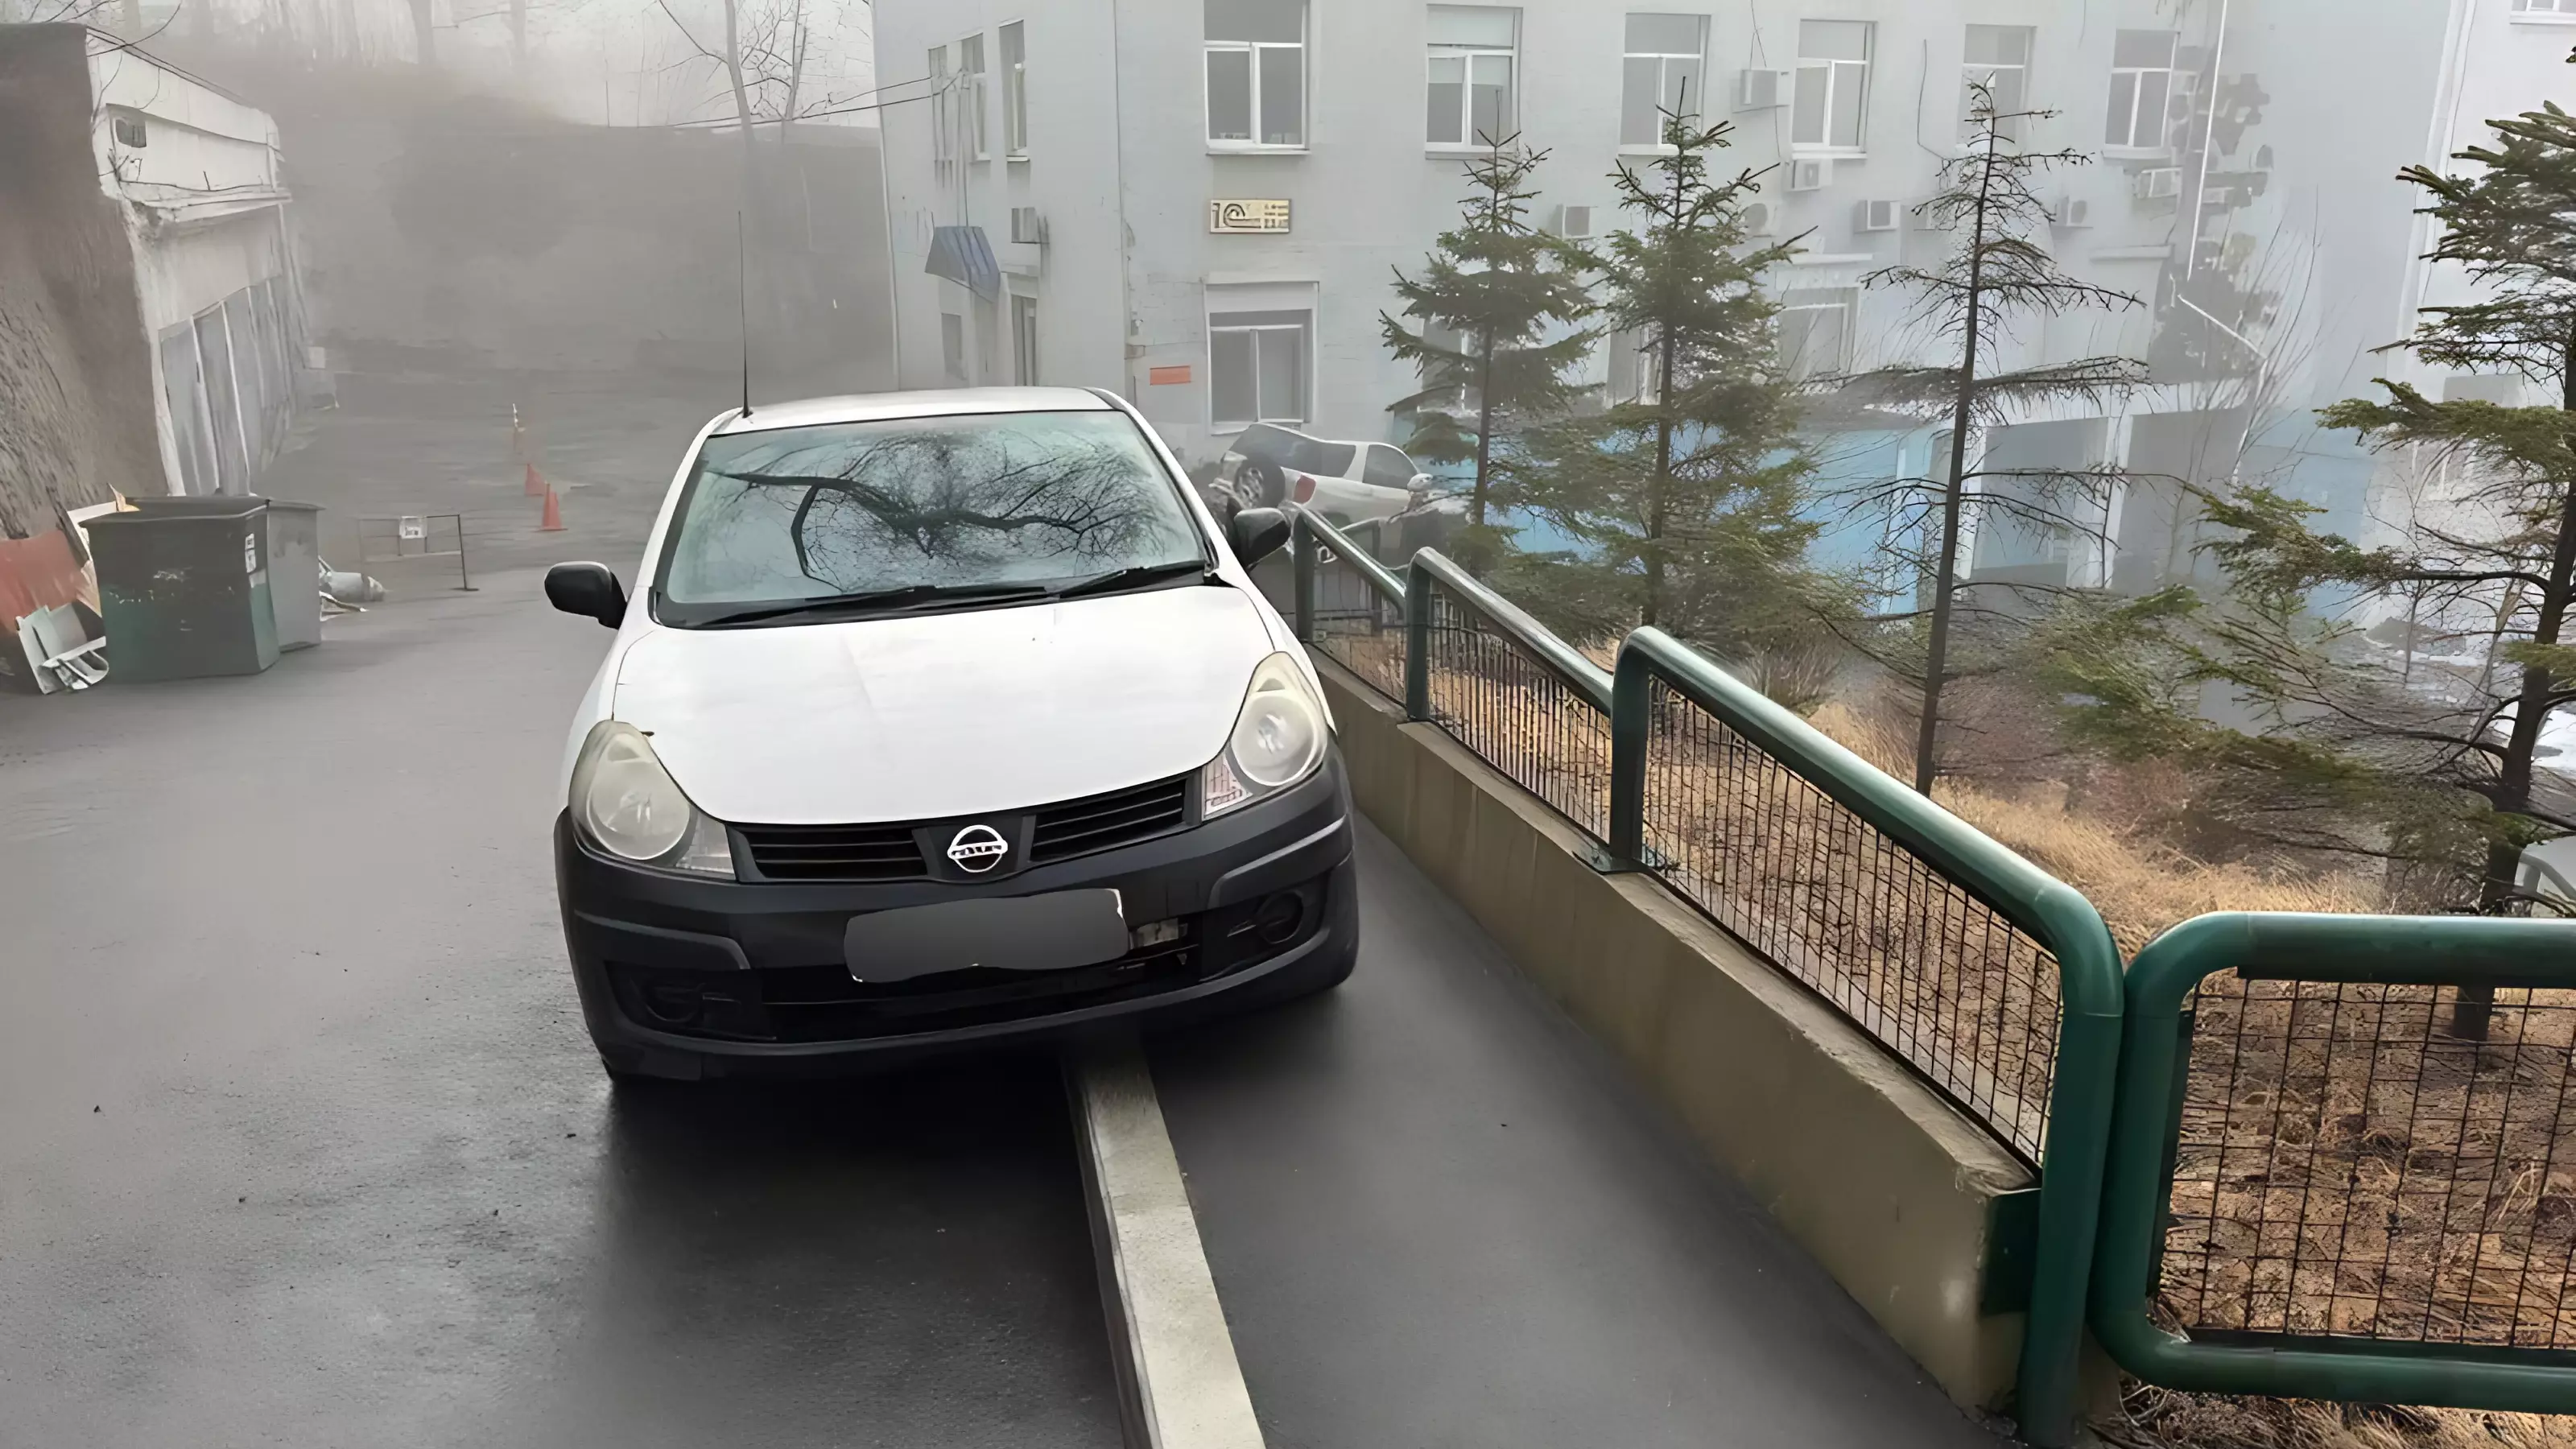 Автомобиль перегородил тротуар и часть улицы в центре Владивостока